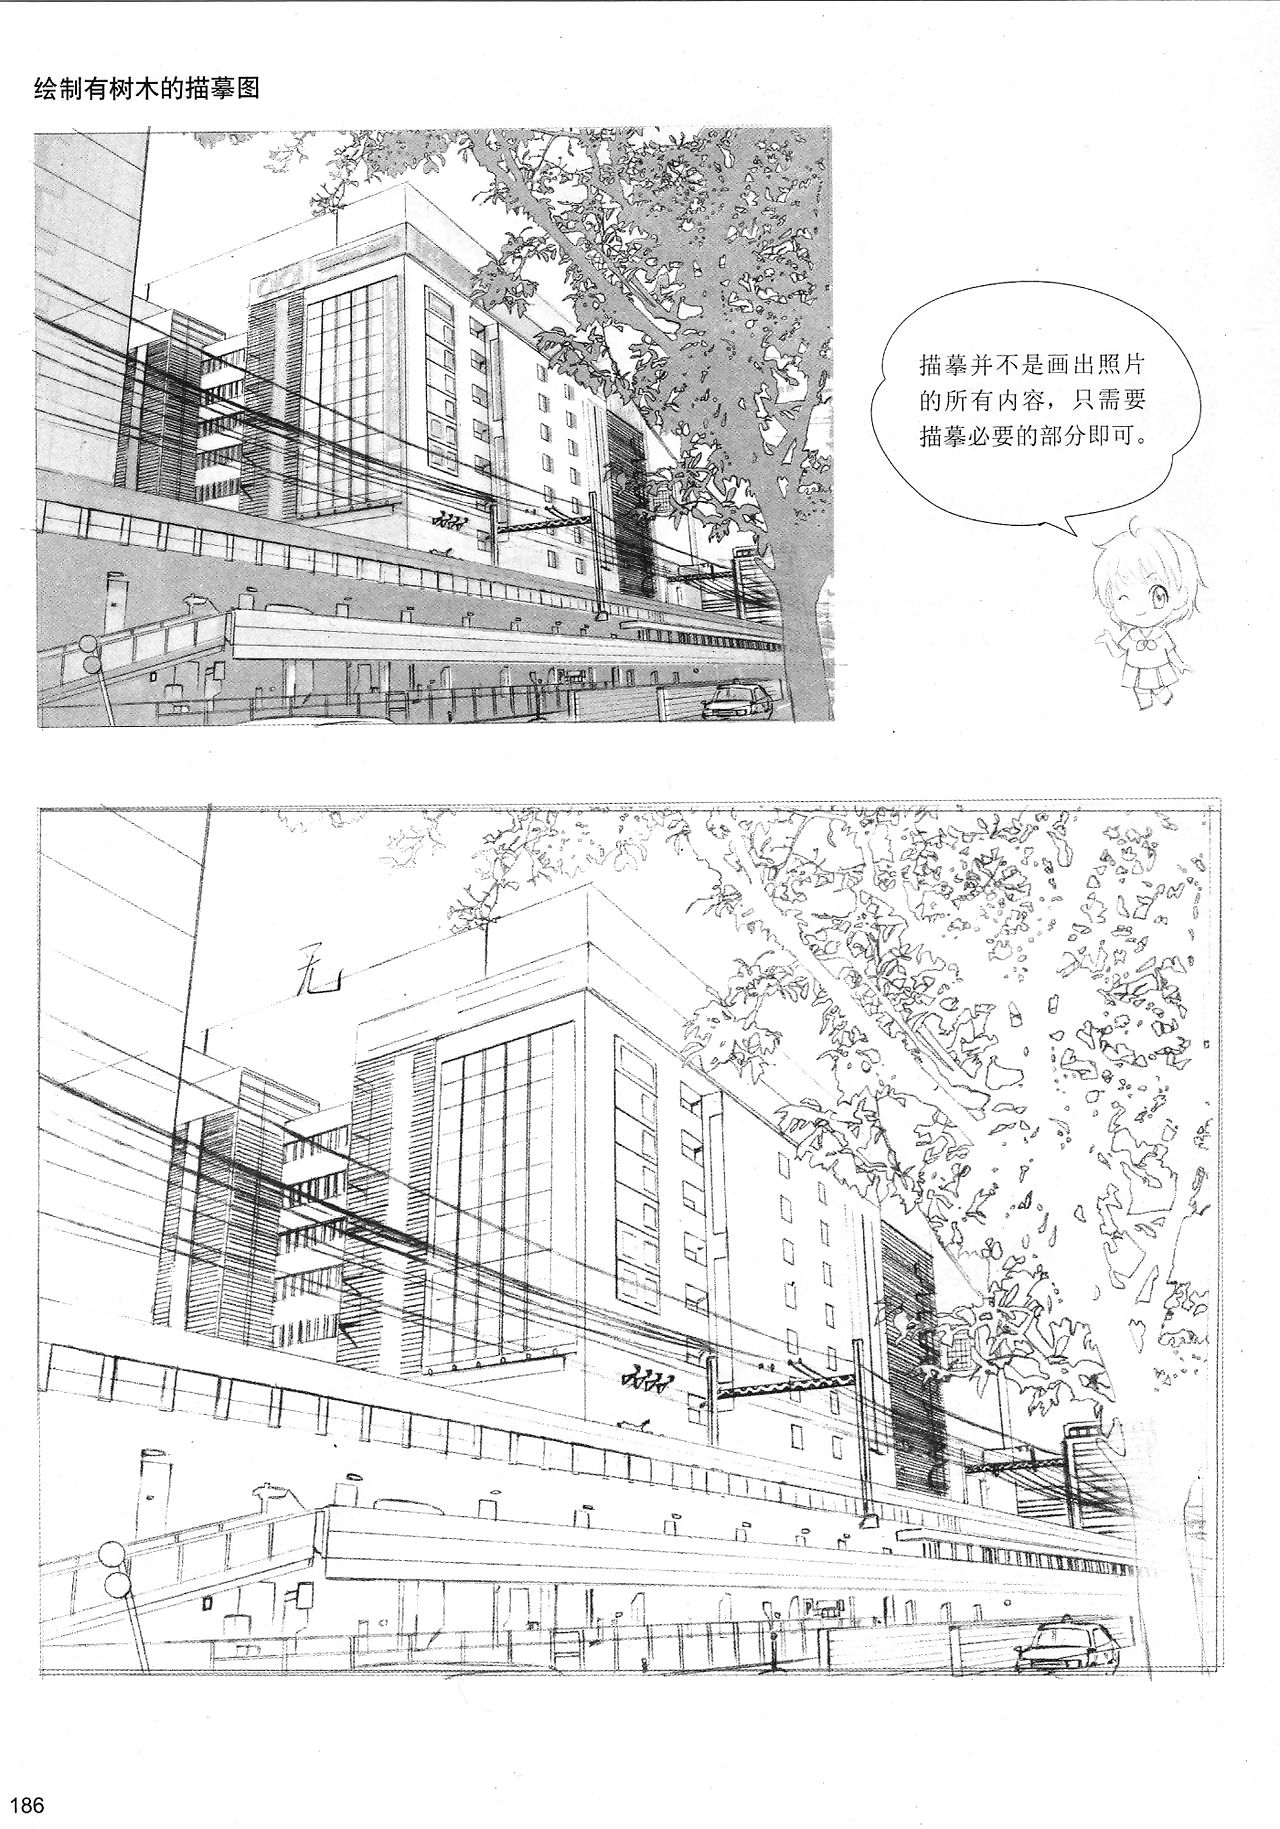 ใน อะไร ทาง yon ทำให้ บุกเข้ามาเร็วมาก manga: sketching manga รูปแบบ ถึงขนาดนั้นหรอกครั 4: enveloping ต้อง เคน Accouterment 10